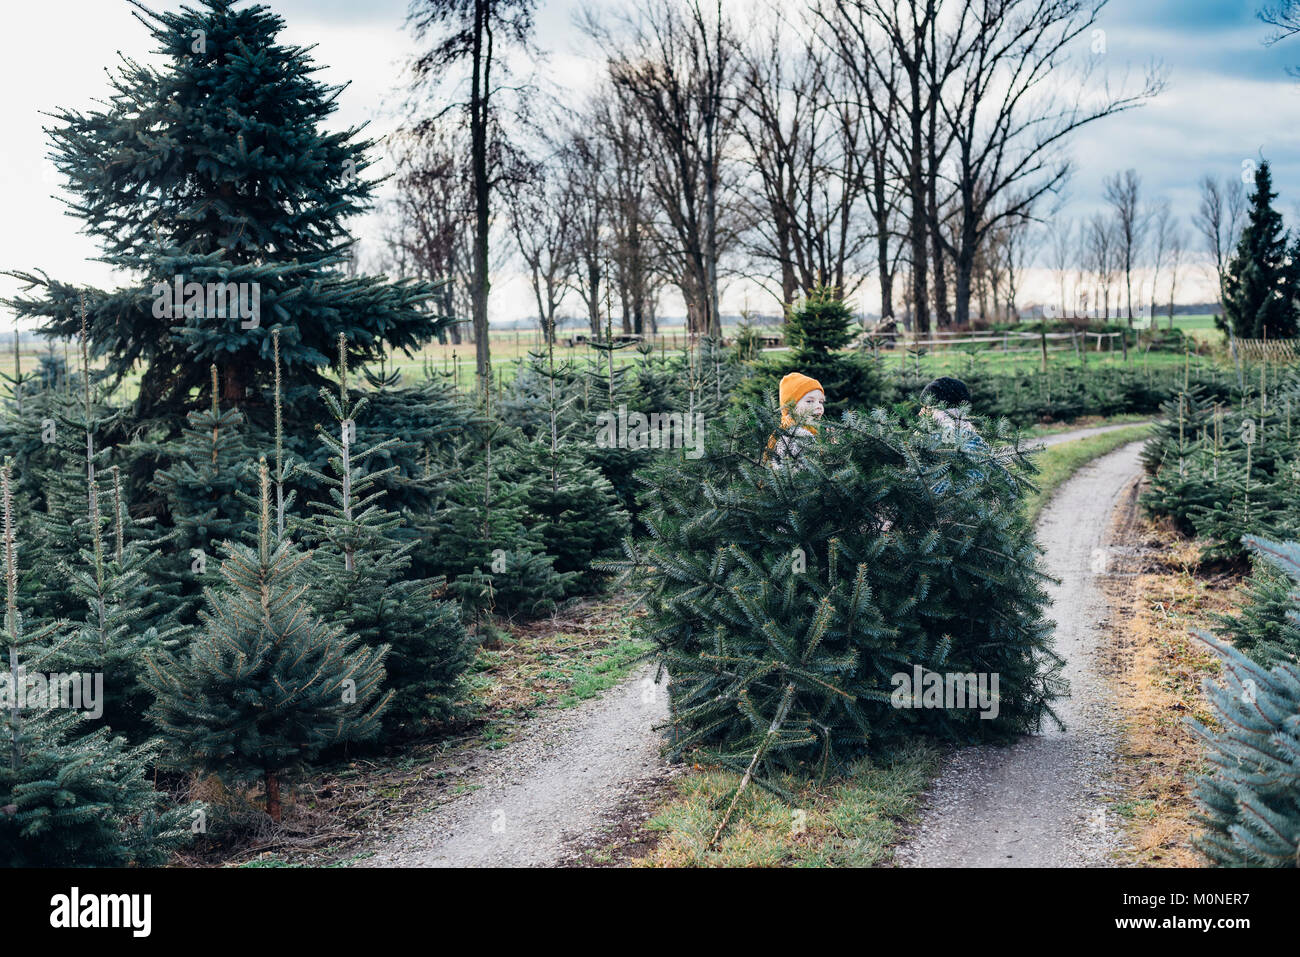 Tannenbaum, Weihnachtsbaumplantage, Sachsen, Allemagne, Weihnachten, Weihnachtsbaum Banque D'Images